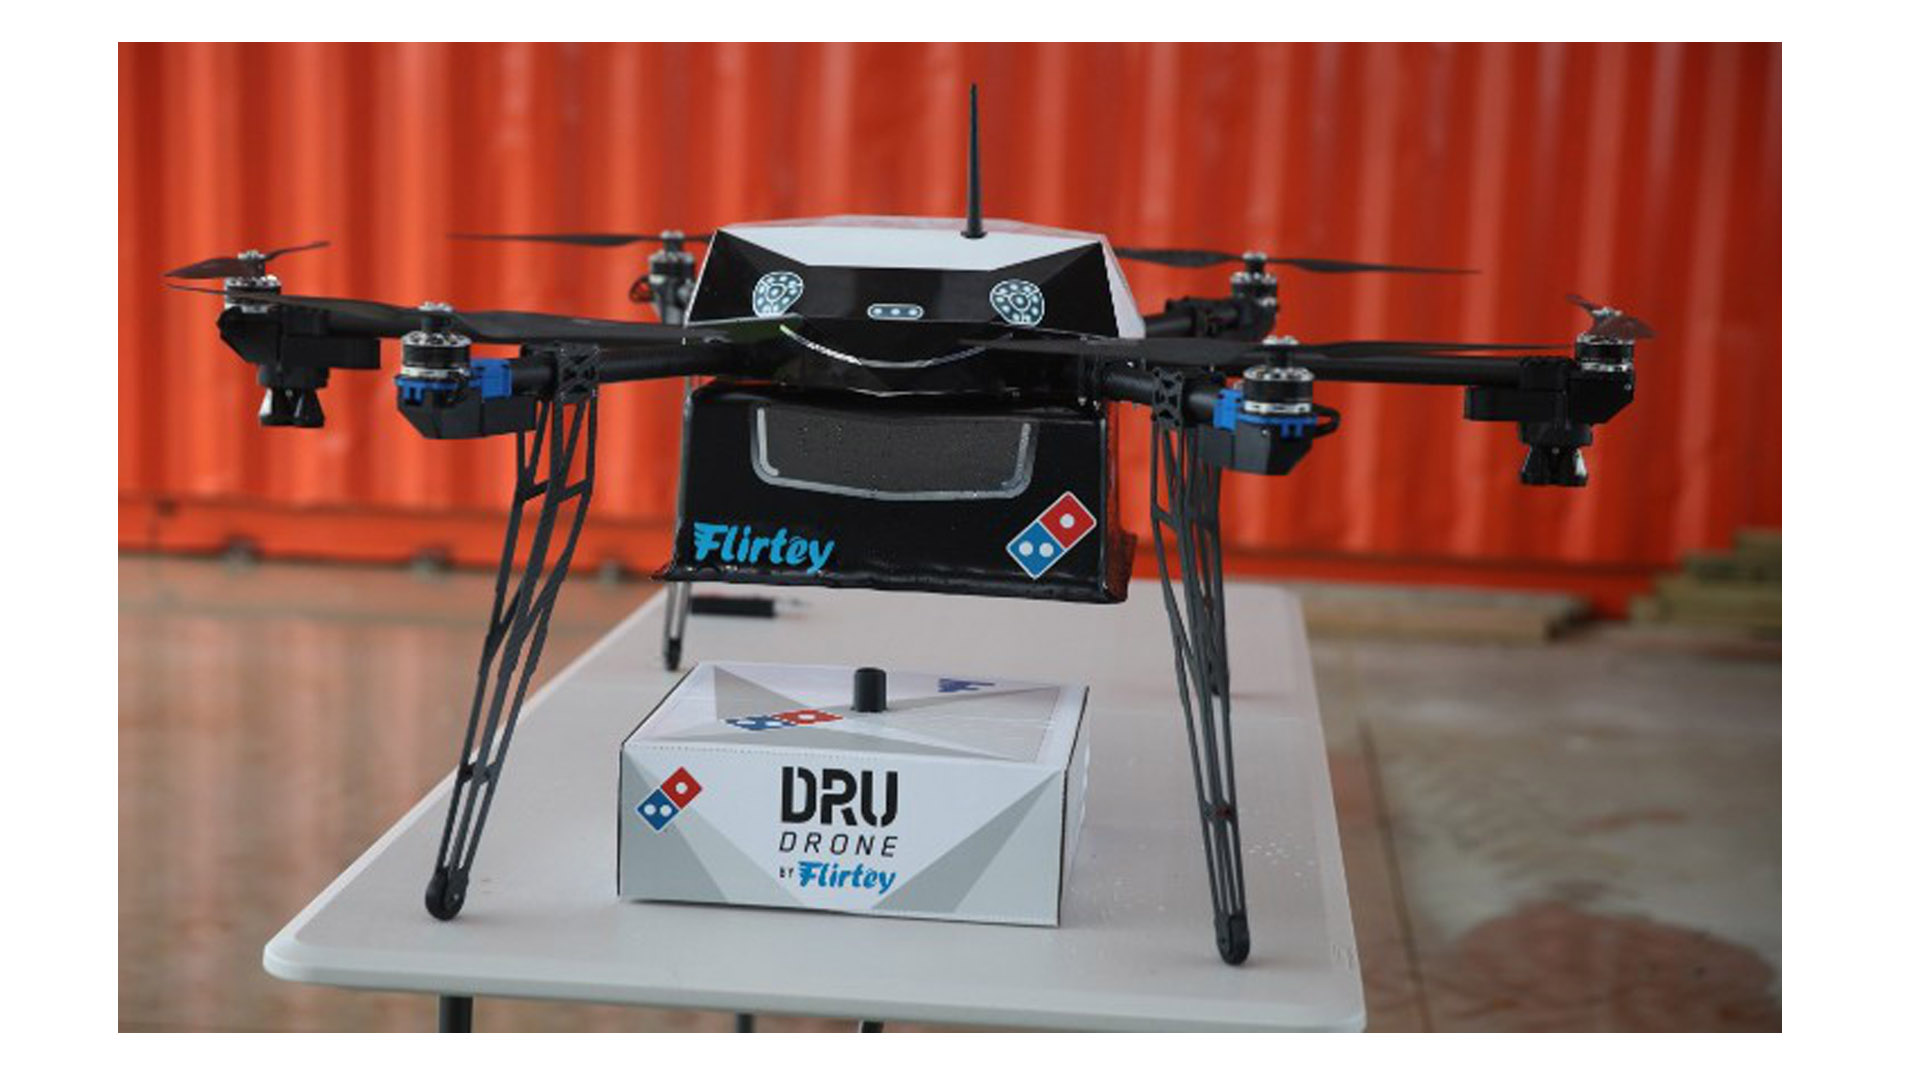 Domino's entregará sus productos través de drones. El dispositivo será automatizado pero un humano estará cerca para supervisar